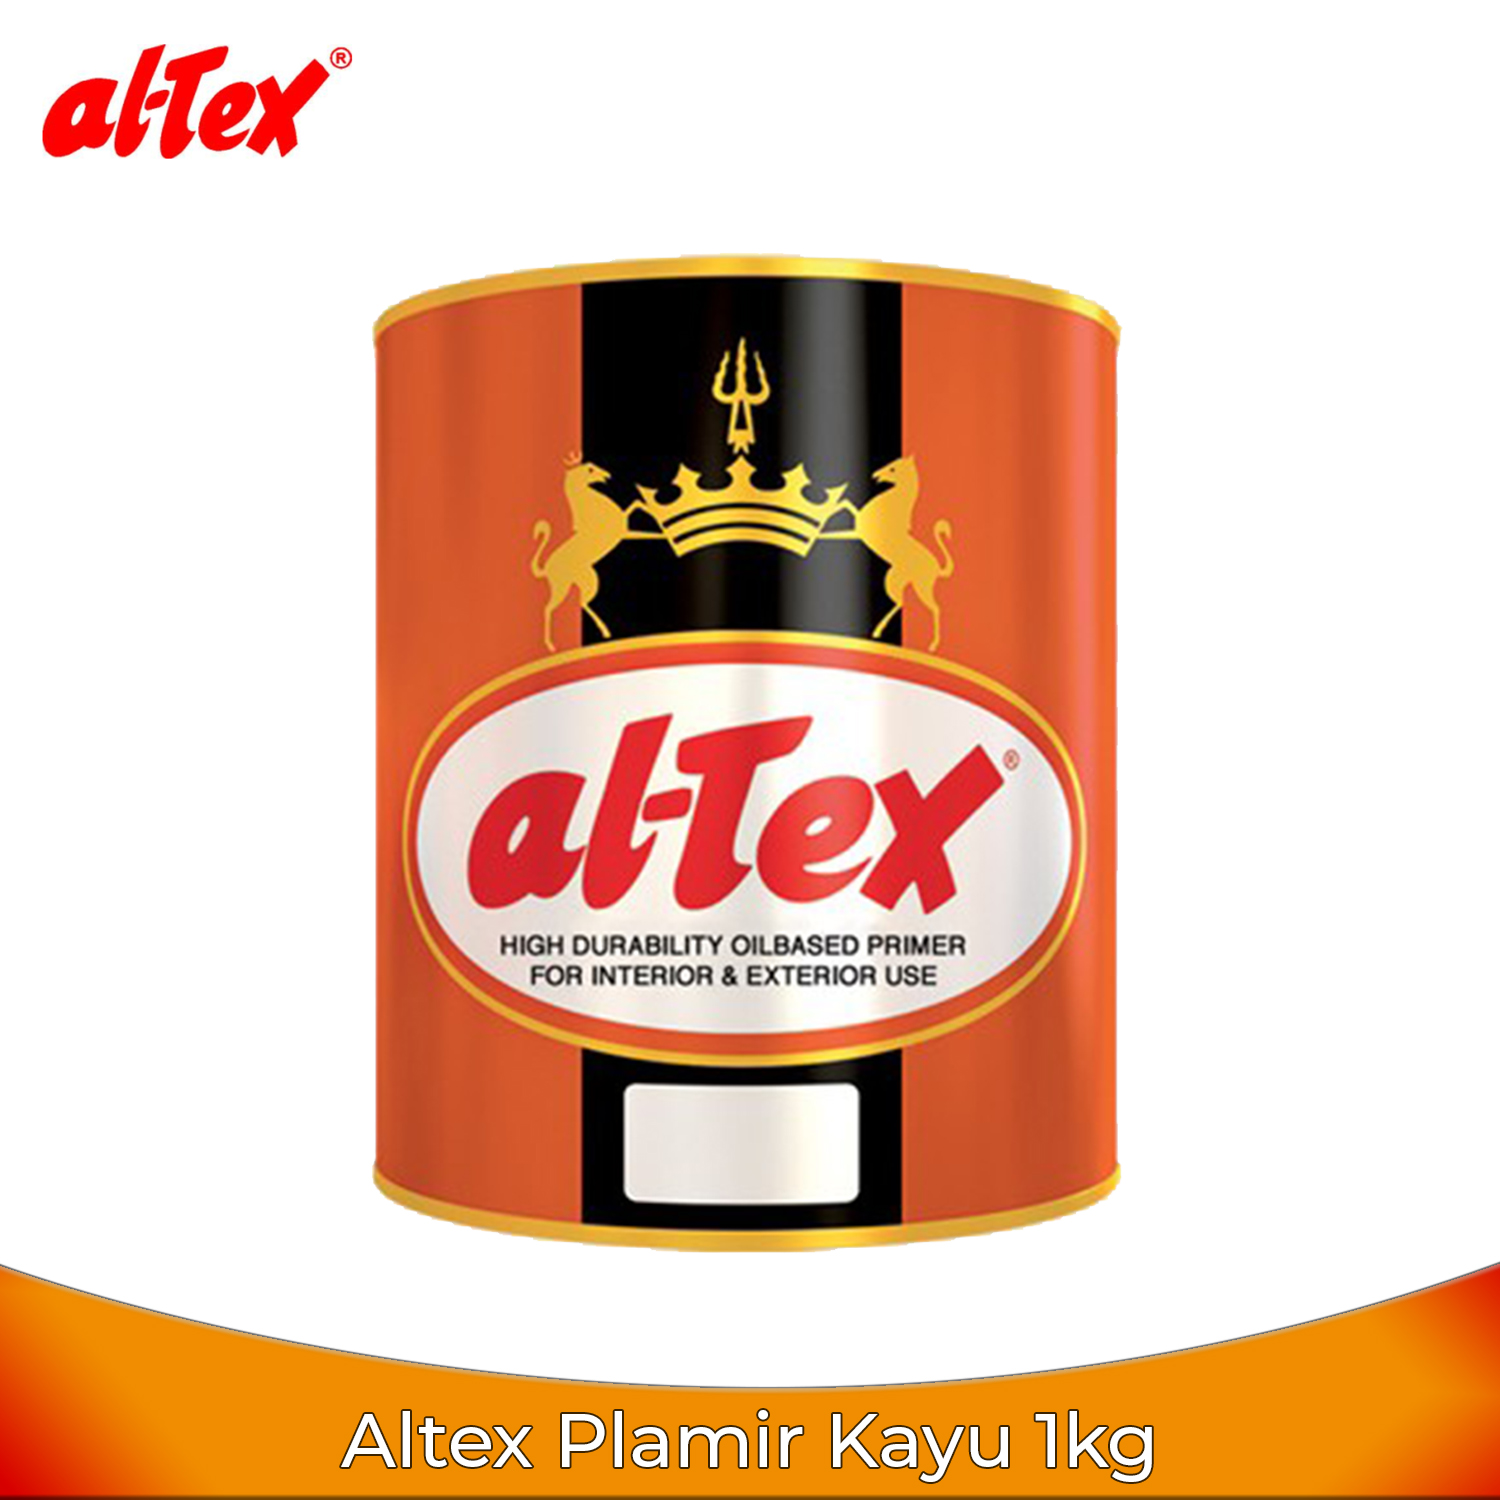 Altex Plamir Kayu 1kg - Cat Dasar